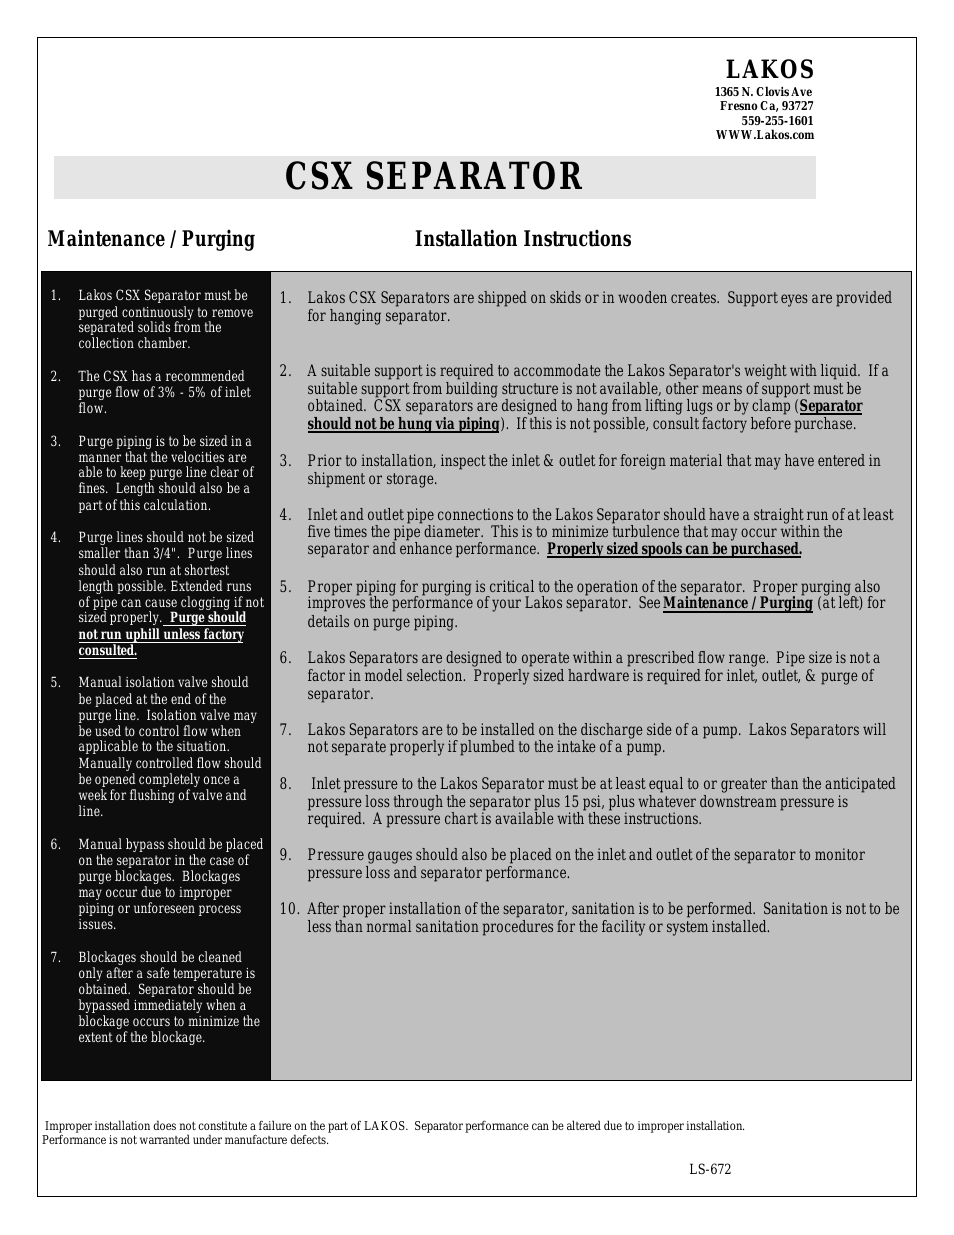 CSX Separator